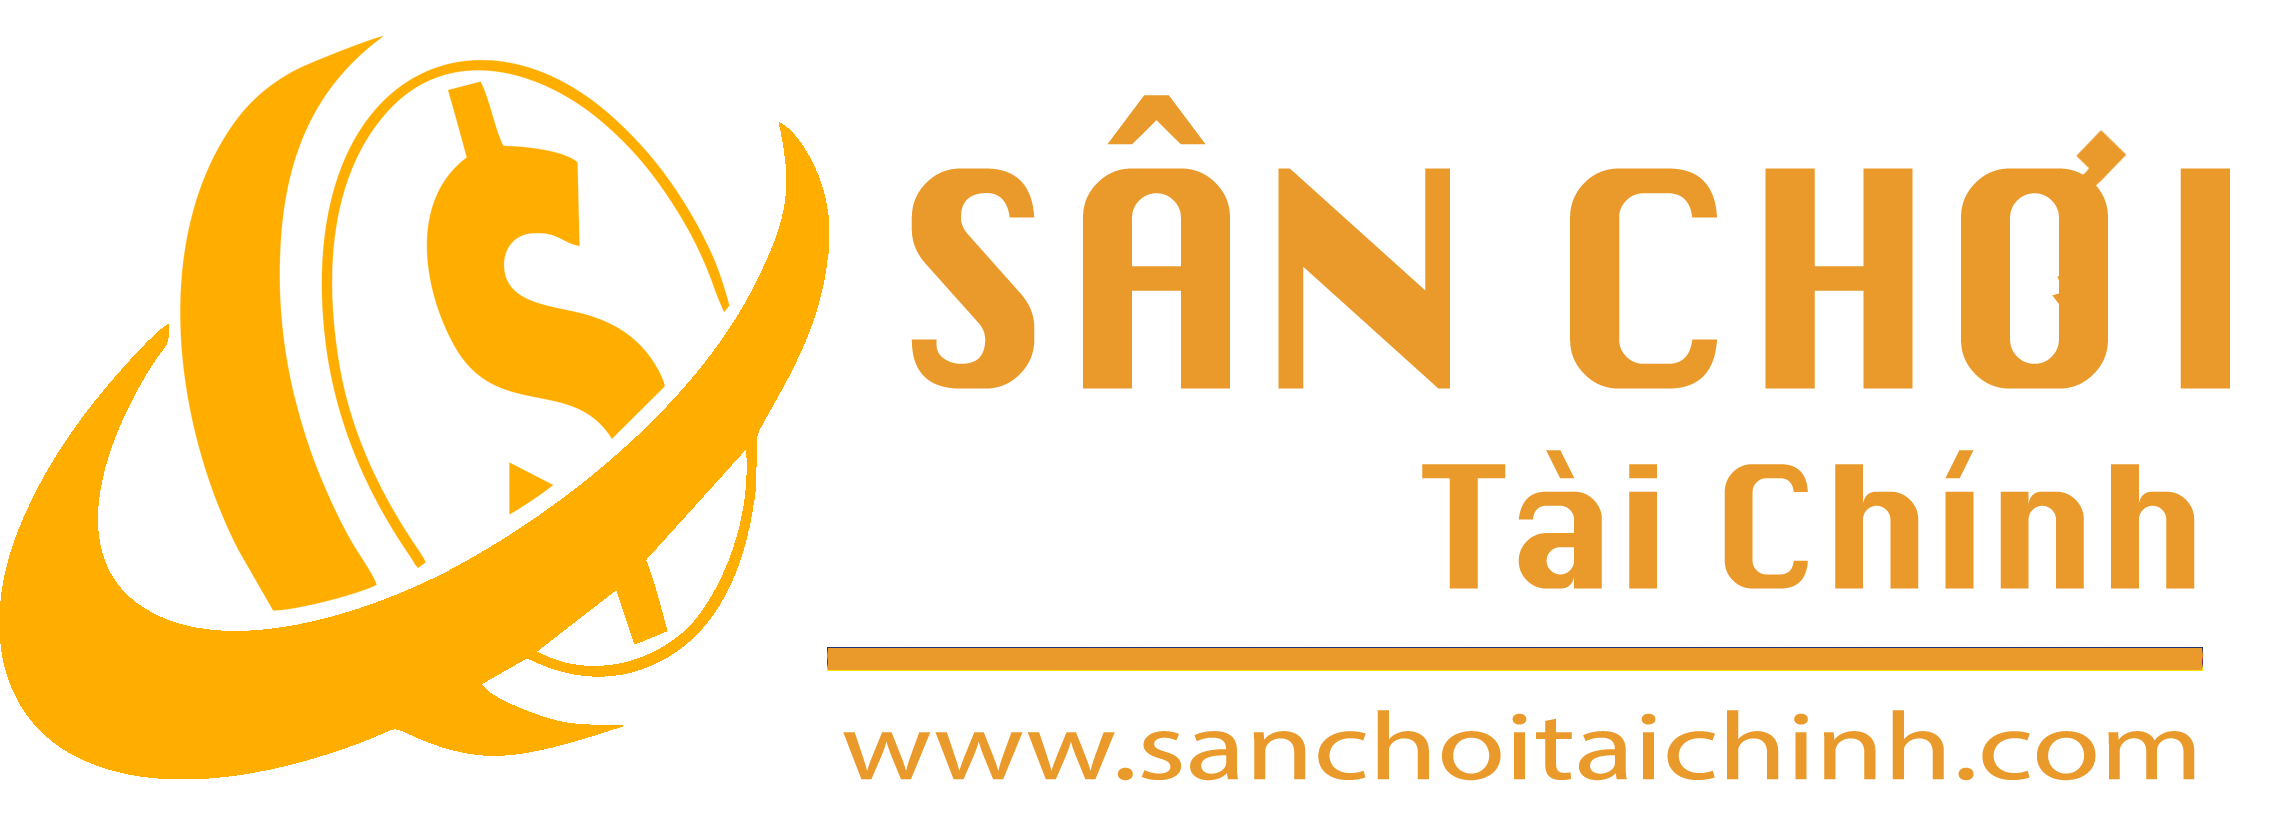 Sanchoitaichinh.com